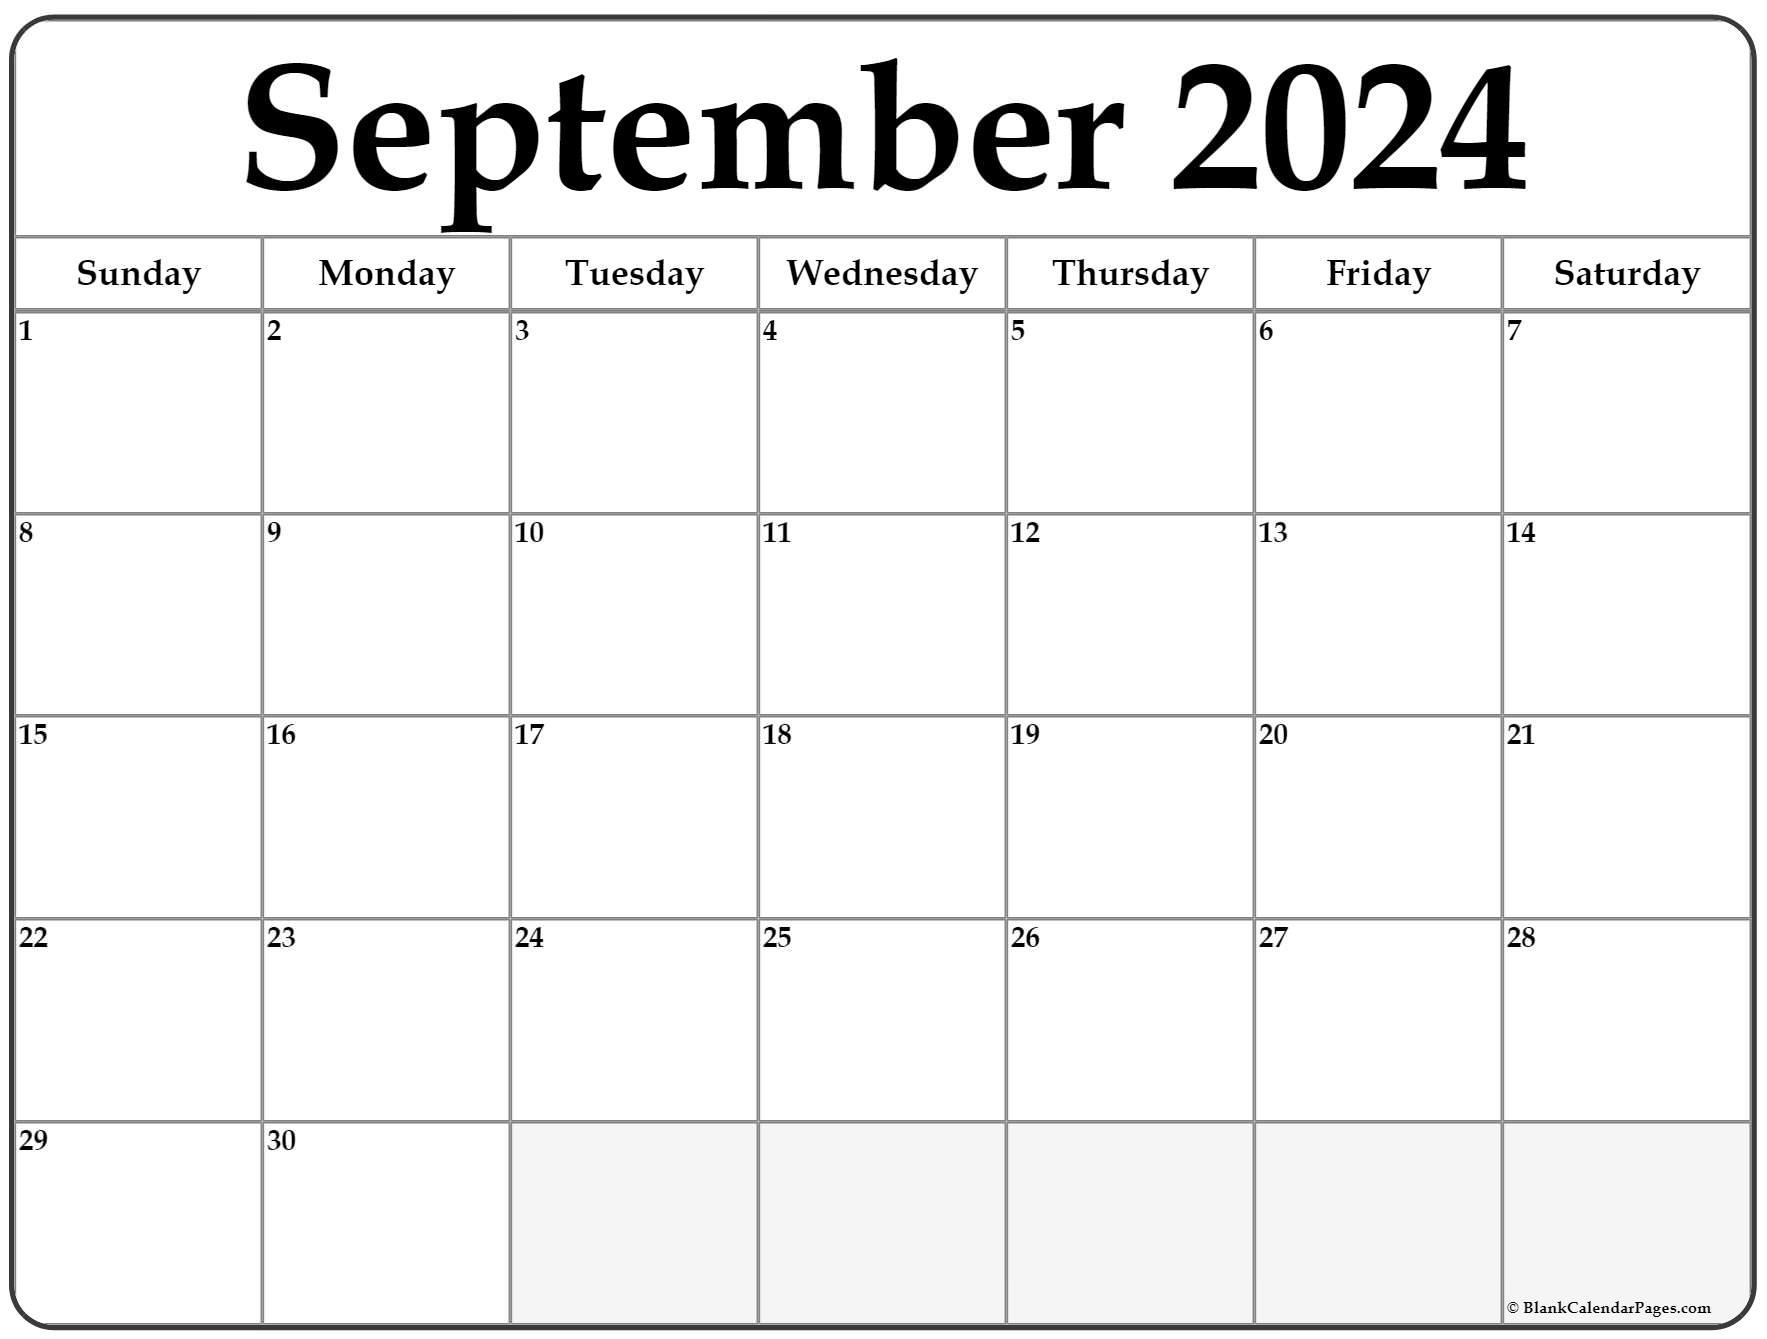 Free September 2022 Calendar September 2022 Calendar | Free Printable Calendar Templates